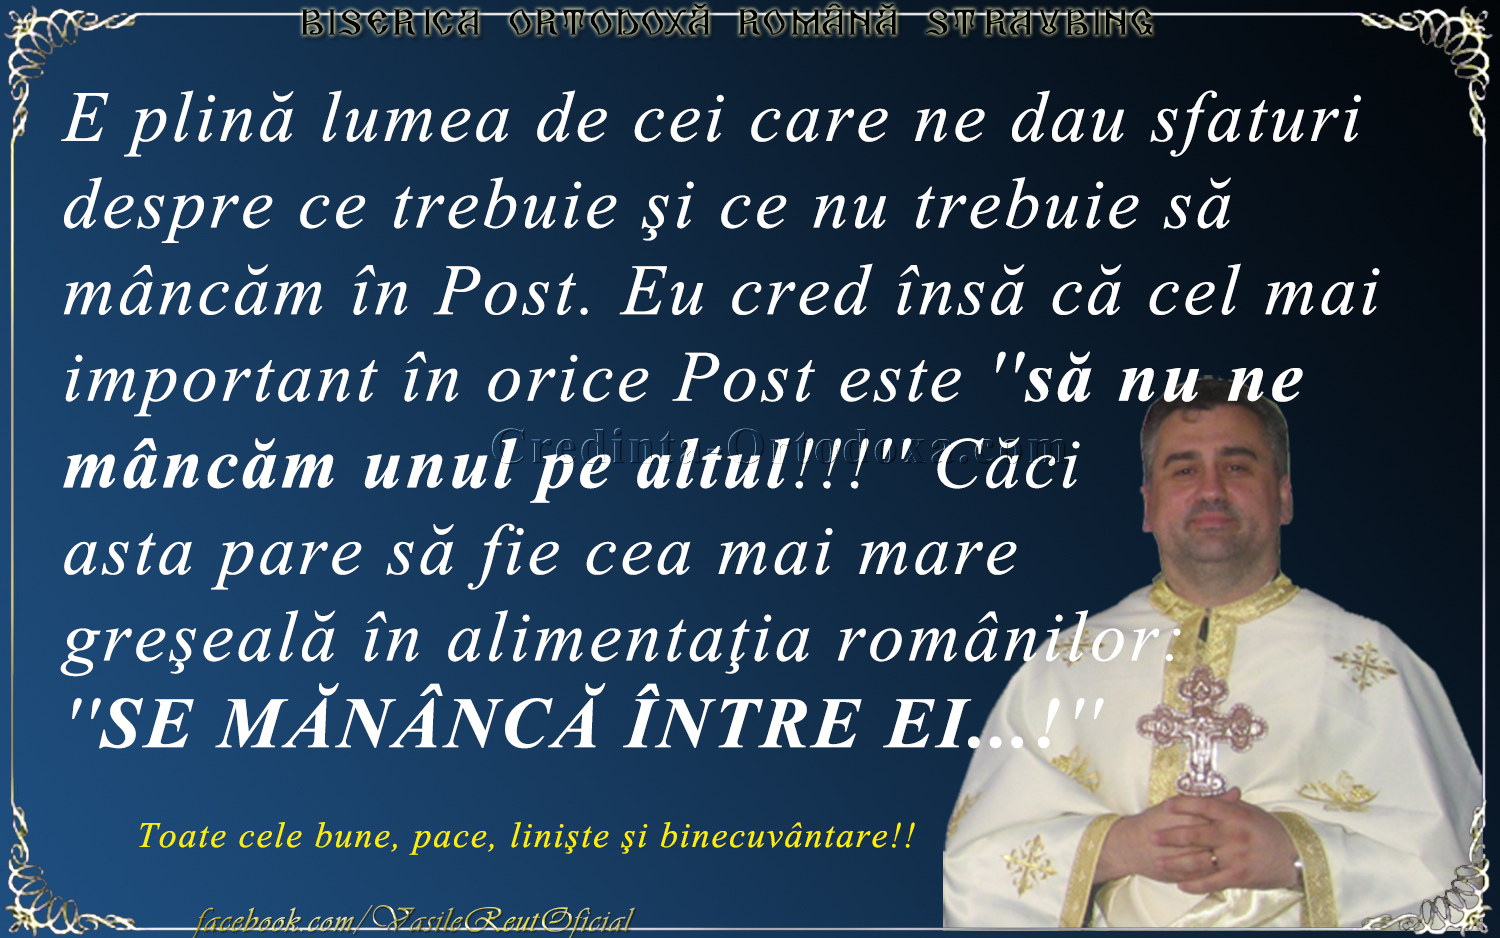 Părintele Vasile Florin Reuţ: Ce trebuie şi ce nu trebuie să mâncăm în Post...?!